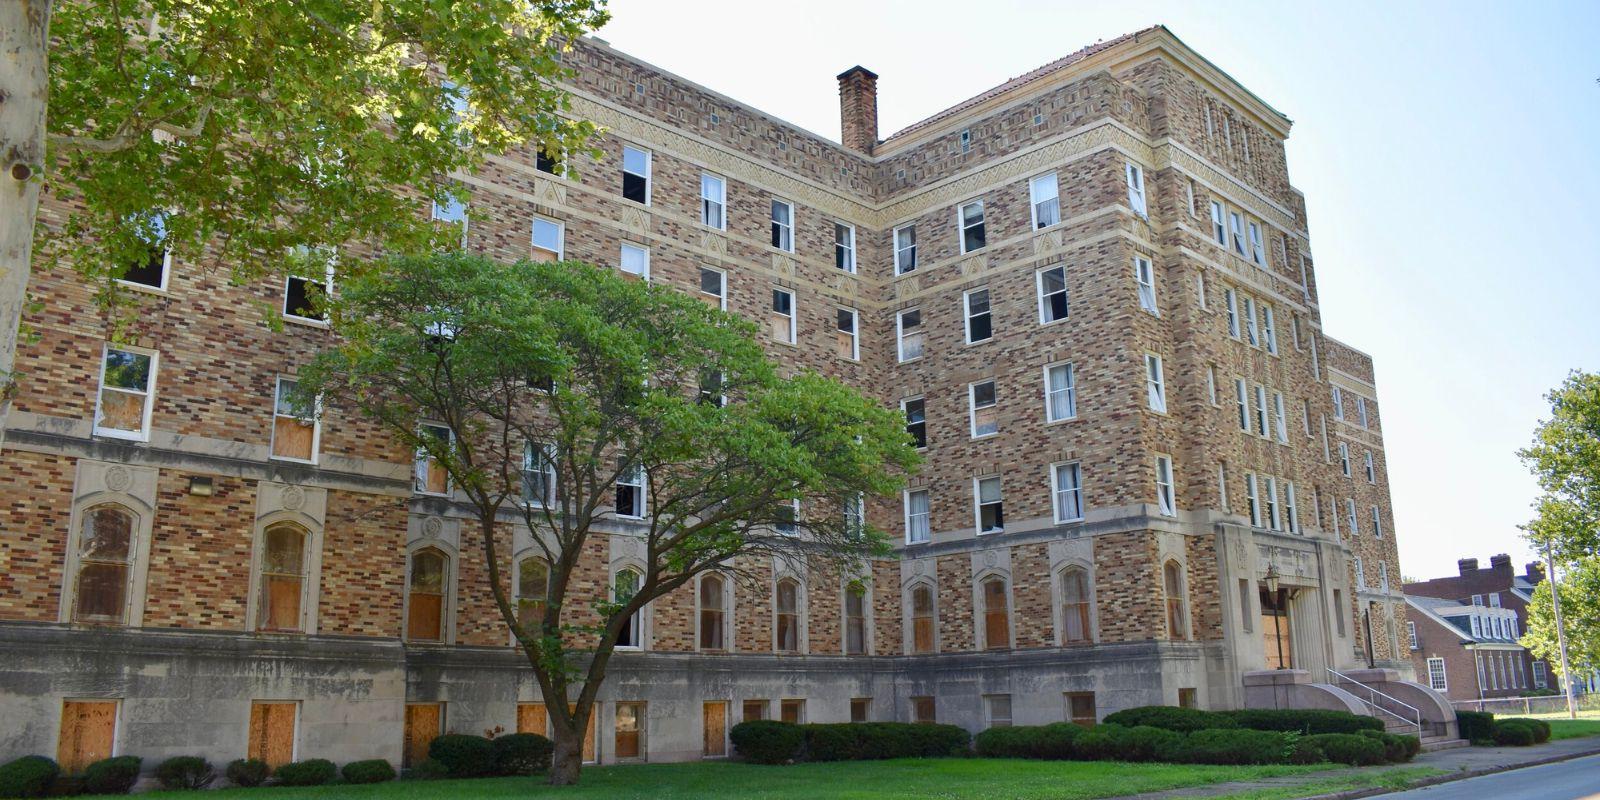 位于小镇, Sumner High School was the first school west of the Mississippi River to provide secondary education for Black students.